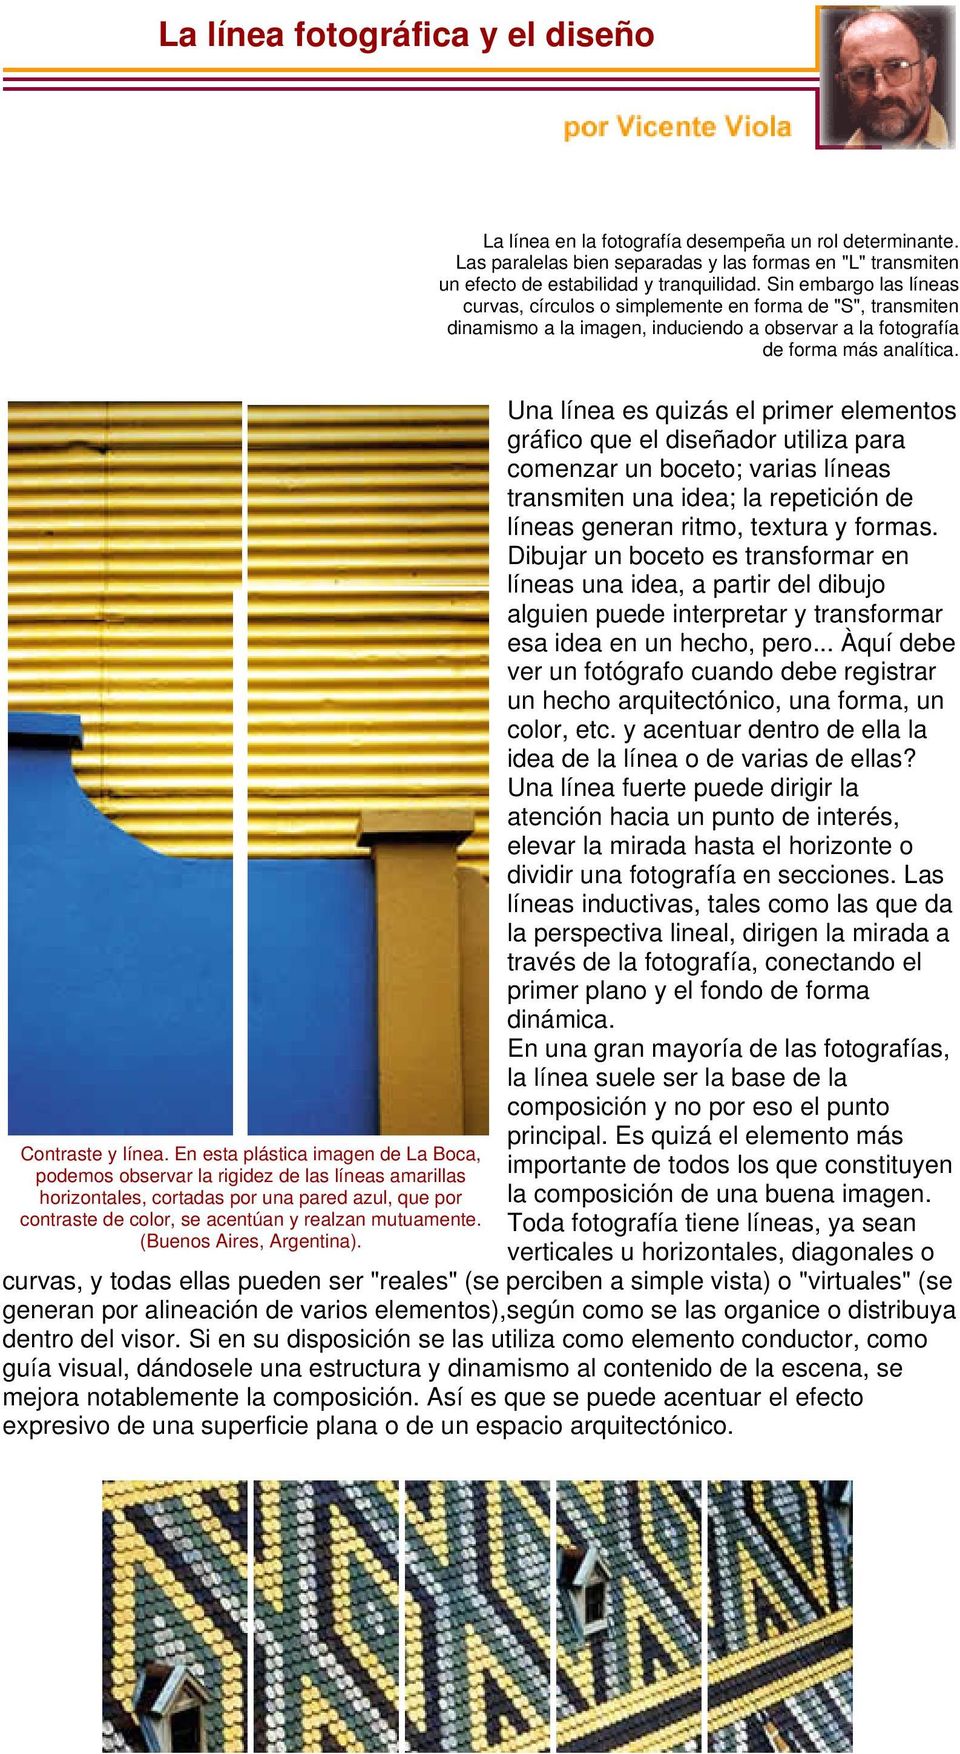 En esta plástica imagen de La Boca, podemos observar la rigidez de las líneas amarillas horizontales, cortadas por una pared azul, que por contraste de color, se acentúan y realzan mutuamente.